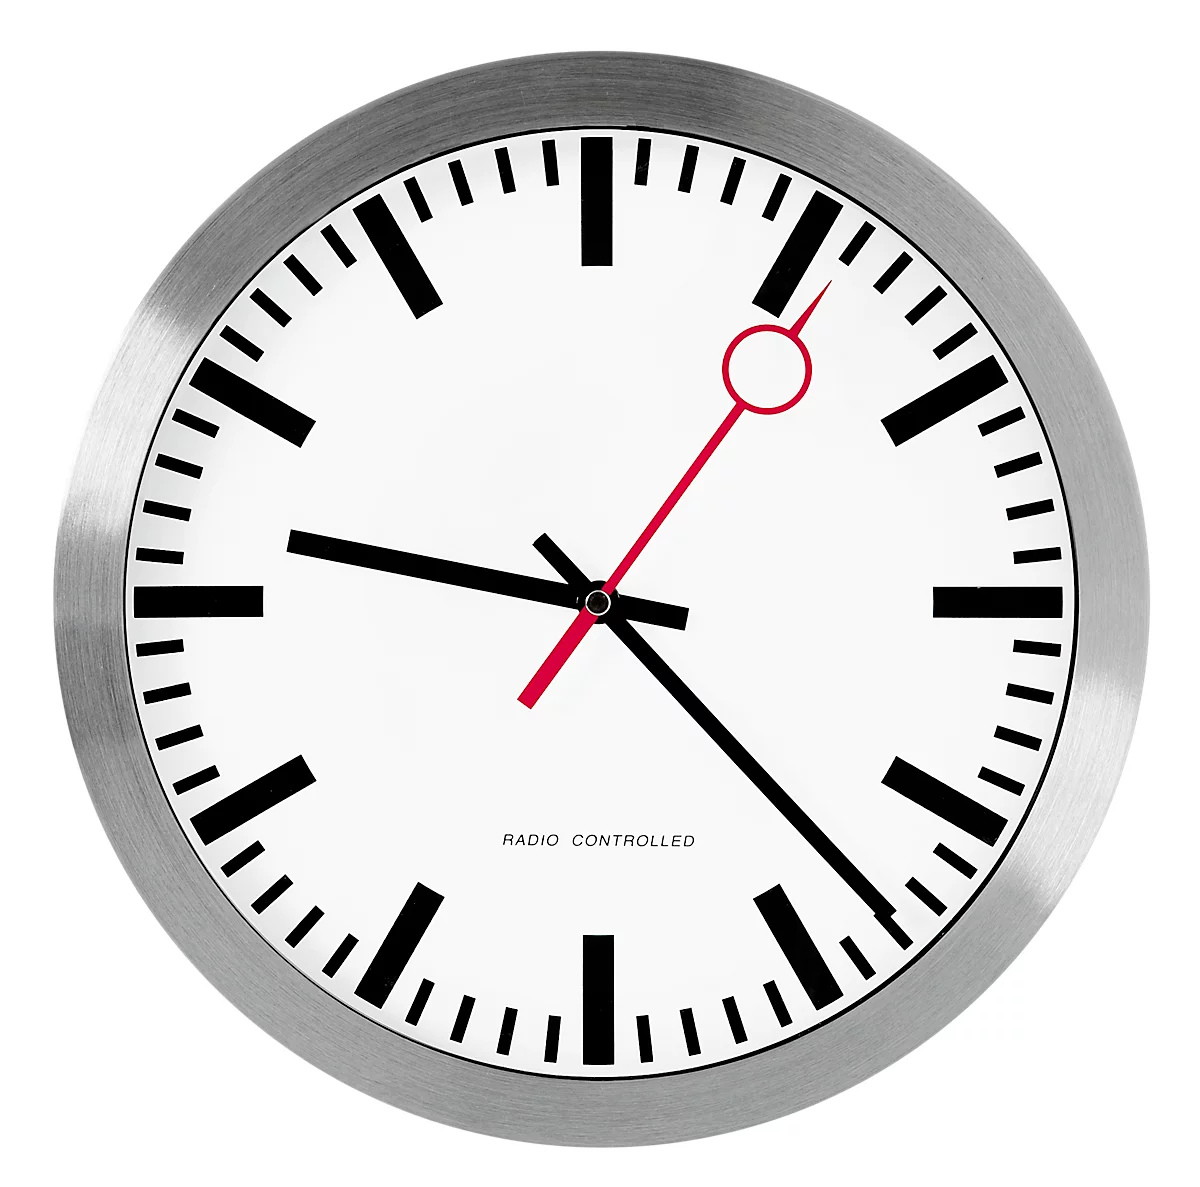 Reloj estilo estación con segundero rojo, Reloj radiocontrolado